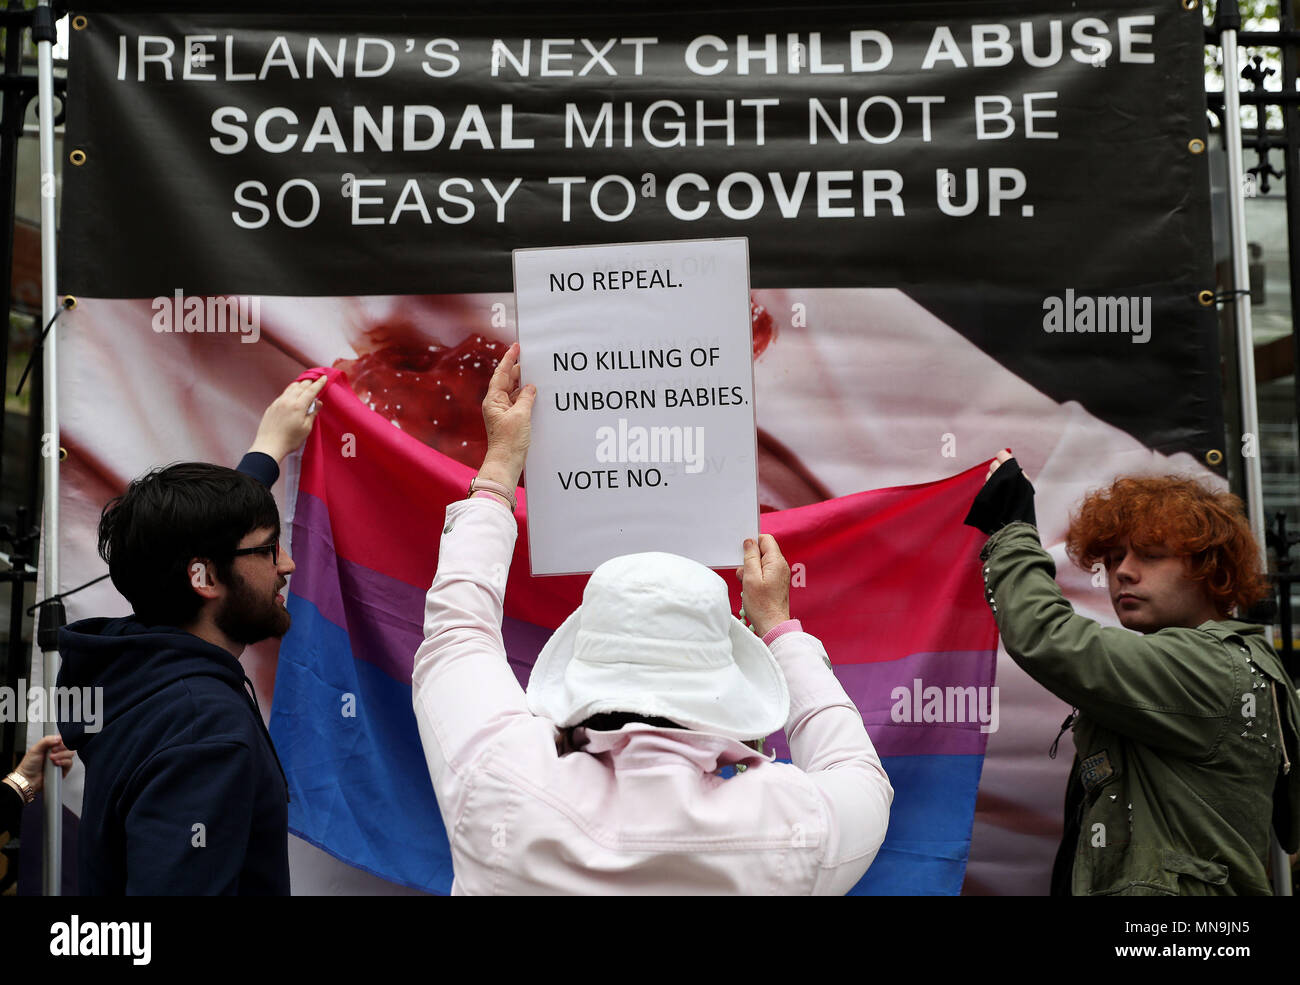 Ein anti-Abtreibung Spoiler ein Zeichen oben hält als pro-choice-Aktivisten Anti-abtreibungs-Banner, die Grafiken außerhalb Leinster House, Dublin enthalten, vor dem Referendum am 8. Änderung der irischen Verfassung am 25. Mai. Stockfoto